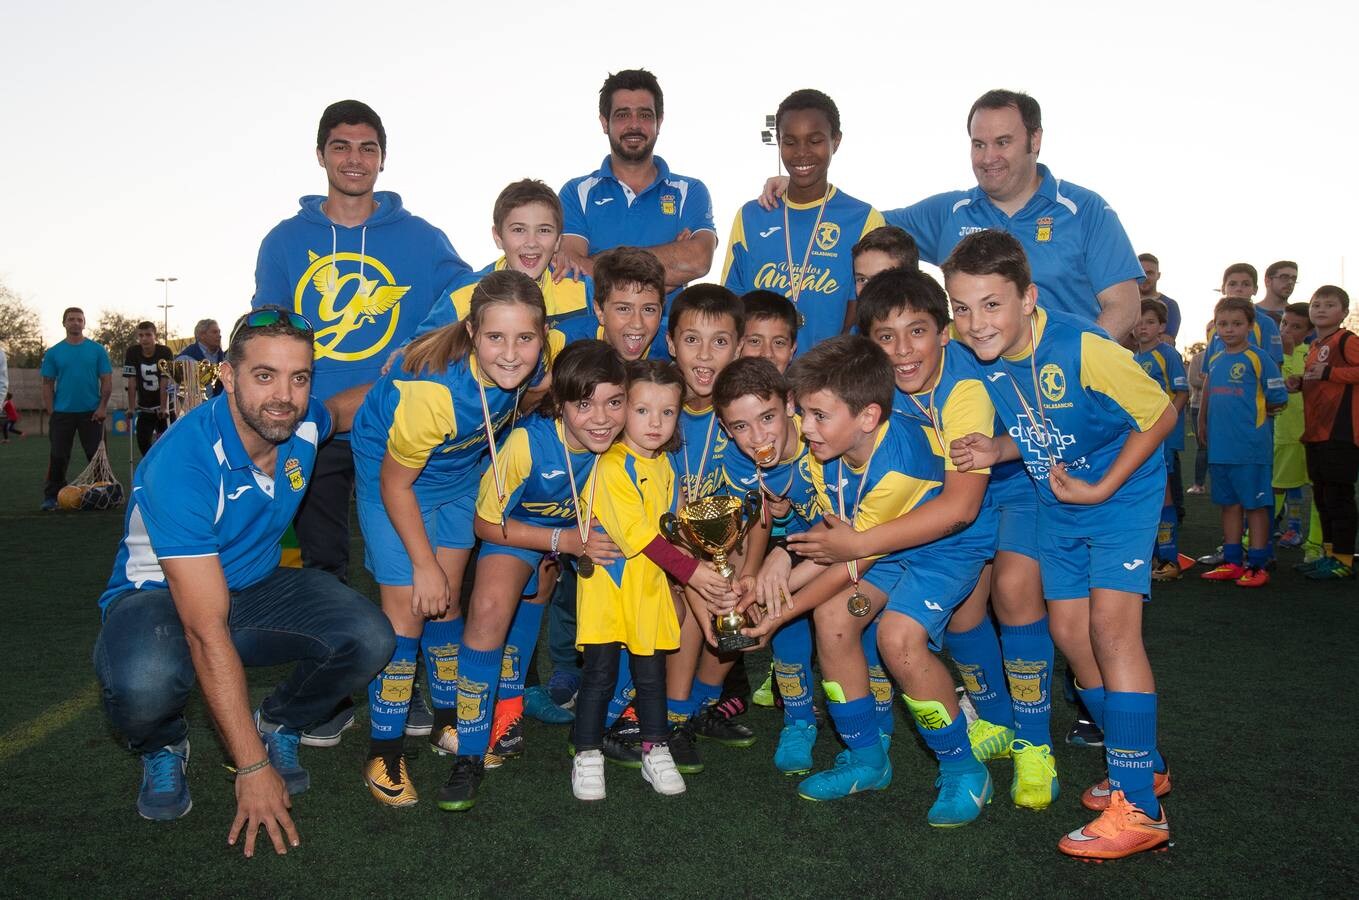 Diversión y deporte en el torneo alevín de fútbol 8 San José de Calasanz.